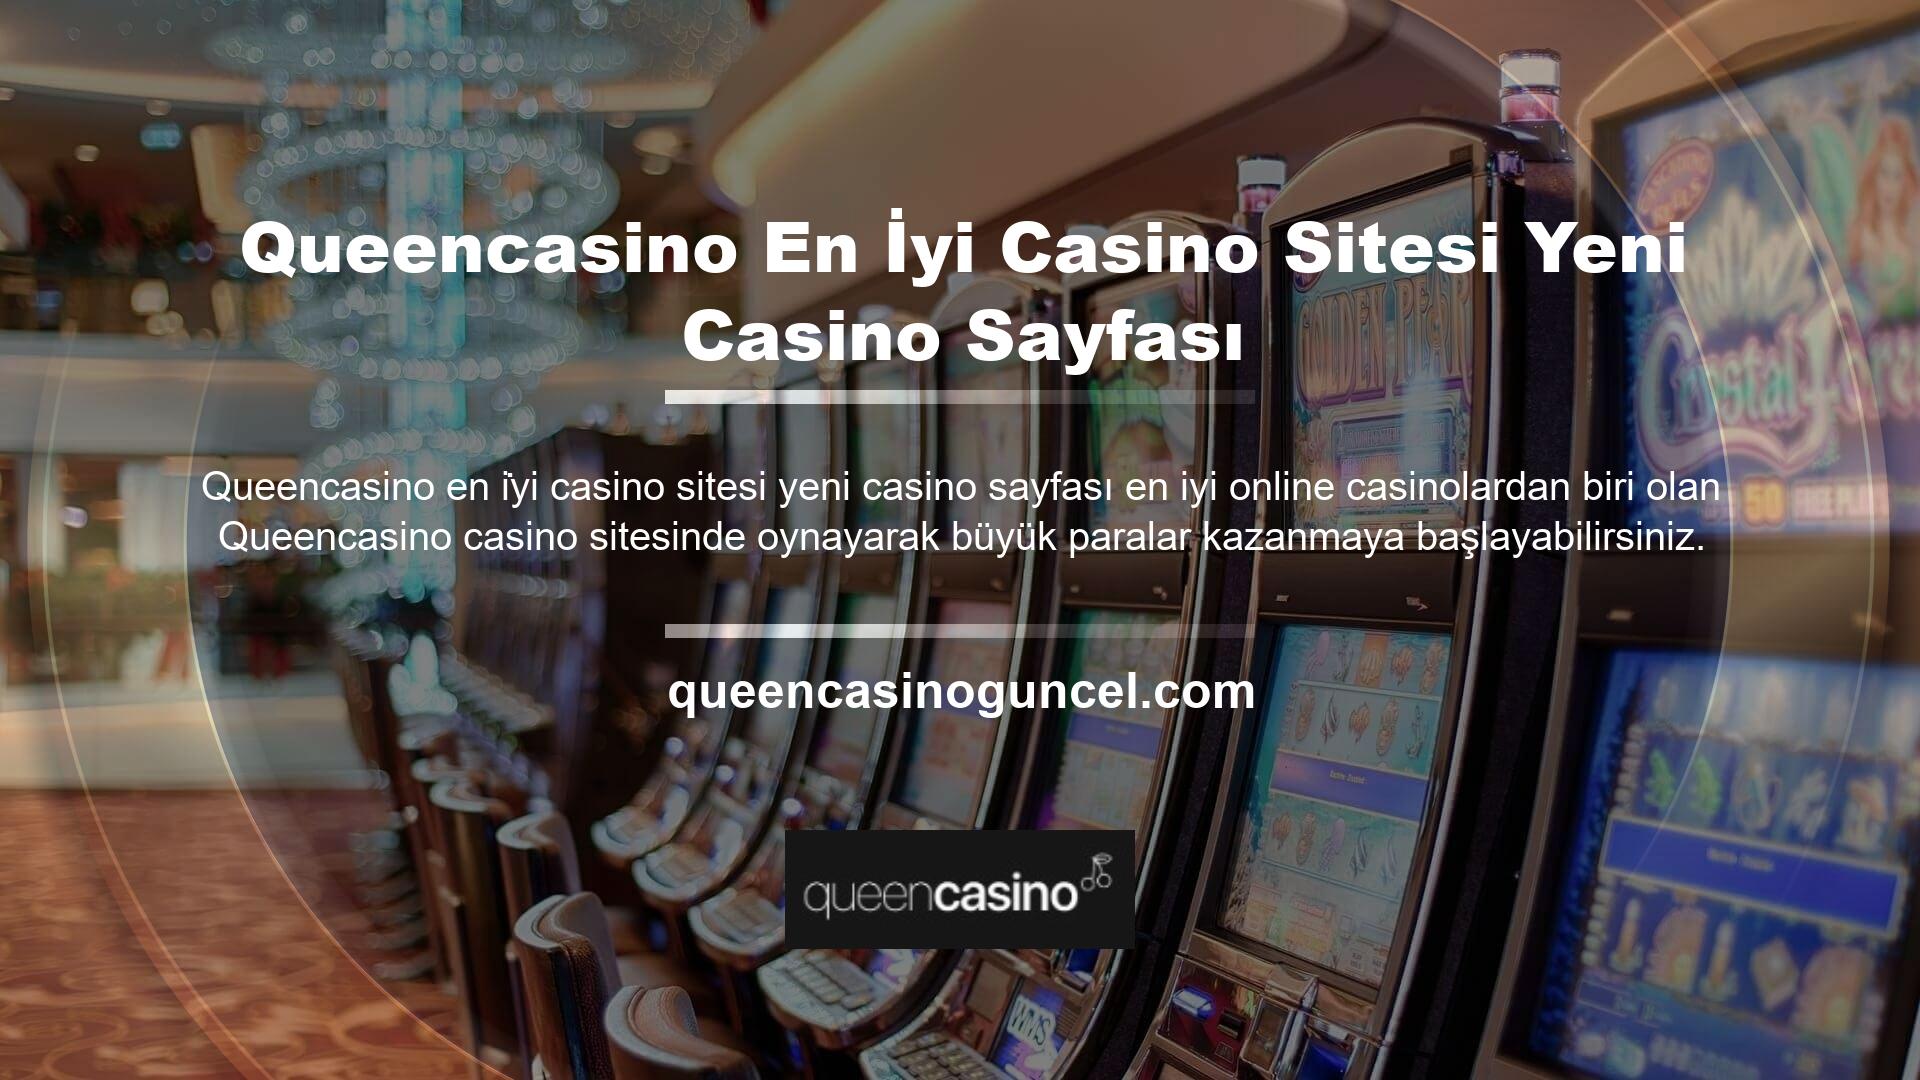 Casino oyunları, çeşitli masa ve slot makinesi oyun seçeneklerini içerir